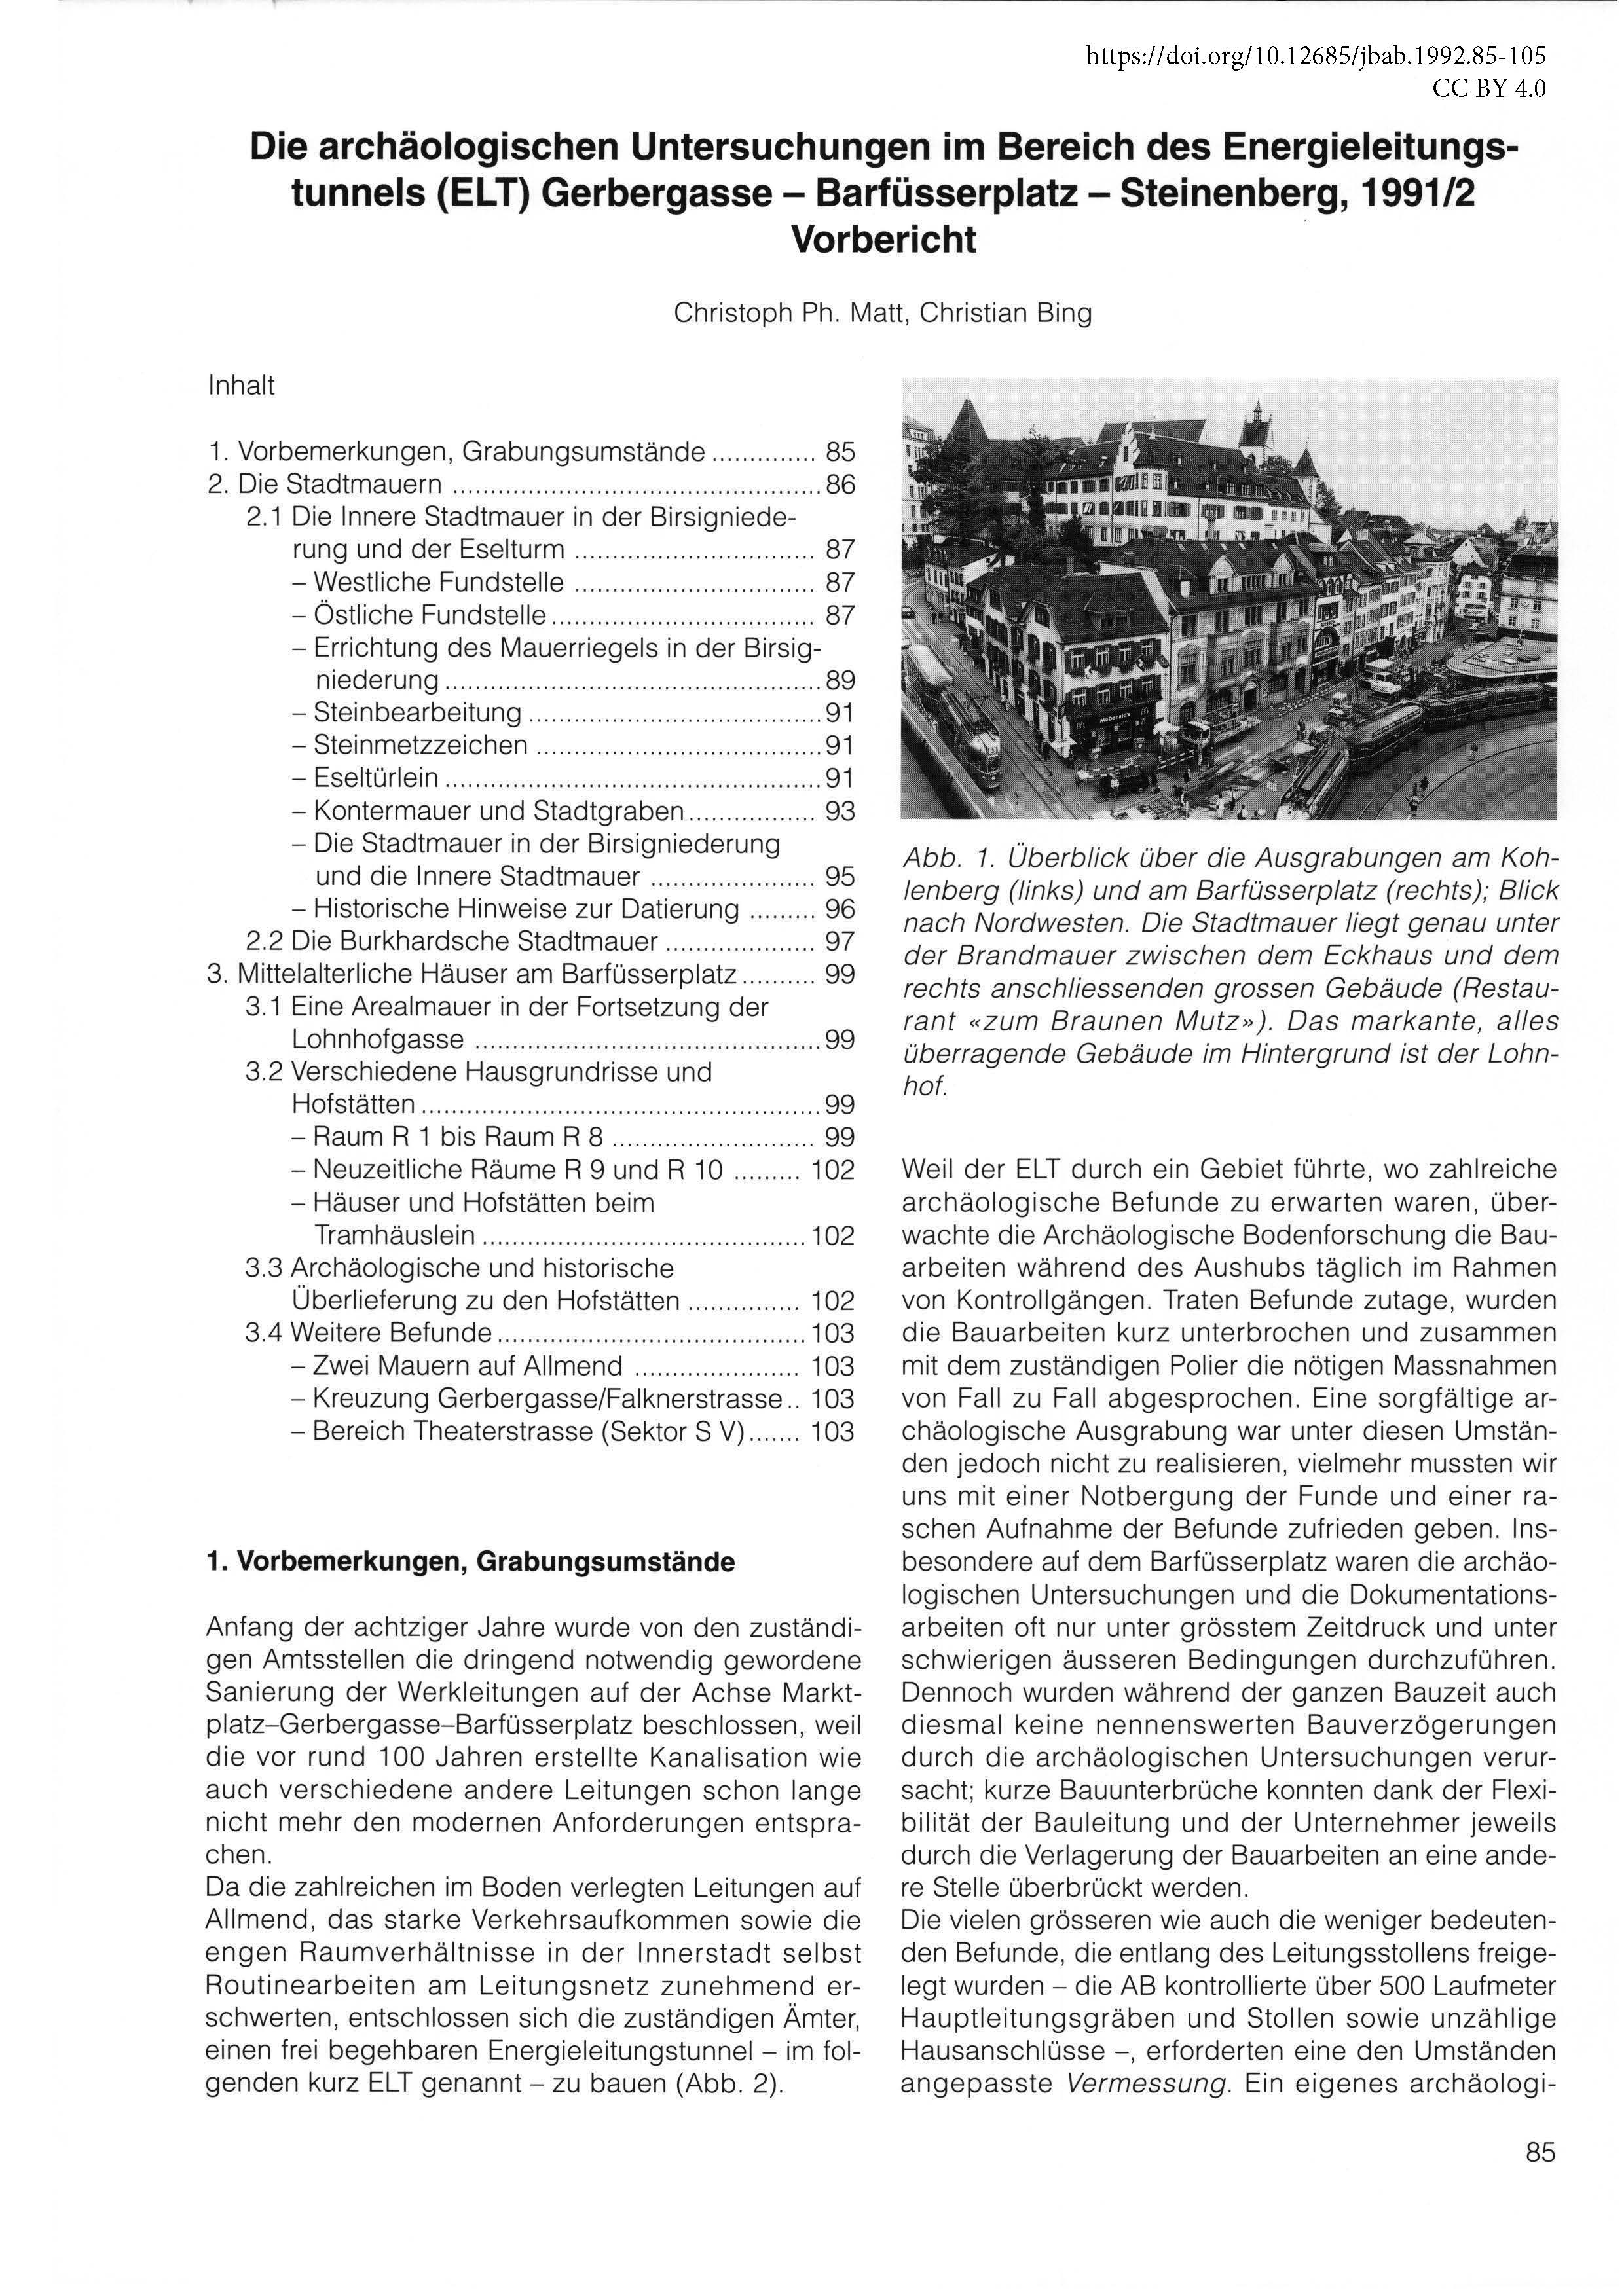 Erste Seite des Vorberichts zu den archäologischen Untersuchungen im Bereich Gerbergasse - Barfüsserplatz - Steinenberg